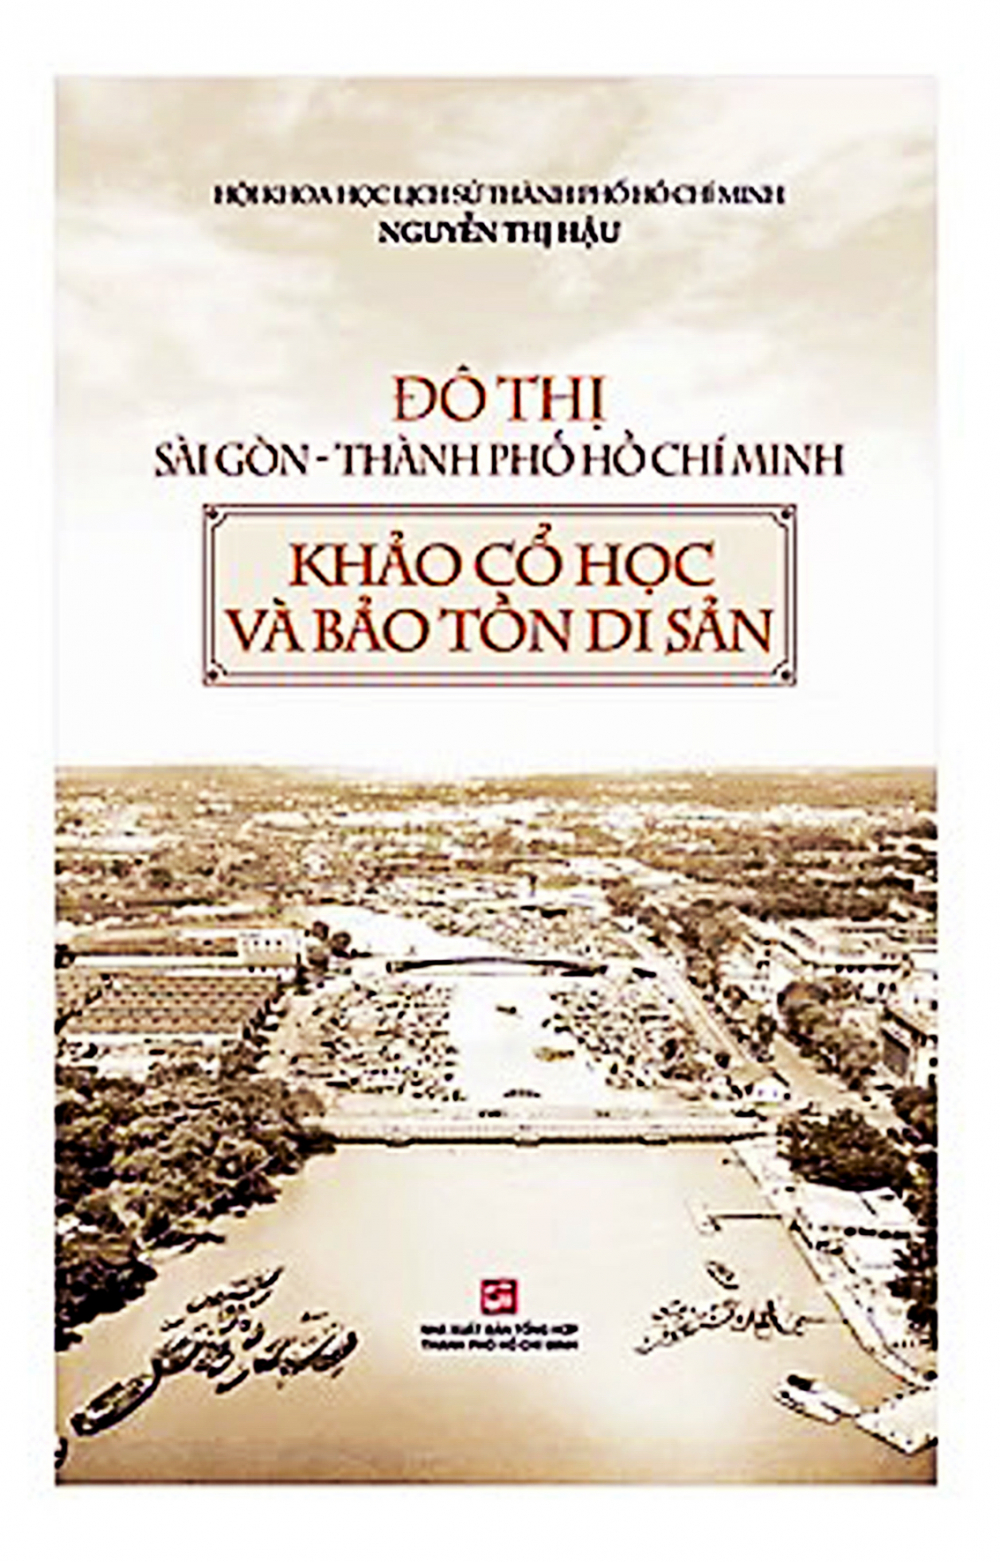 Tác phẩm Đô thị Sài Gòn - Thành phố  Hồ Chí Minh - khảo cổ học và bảo tồn di sản